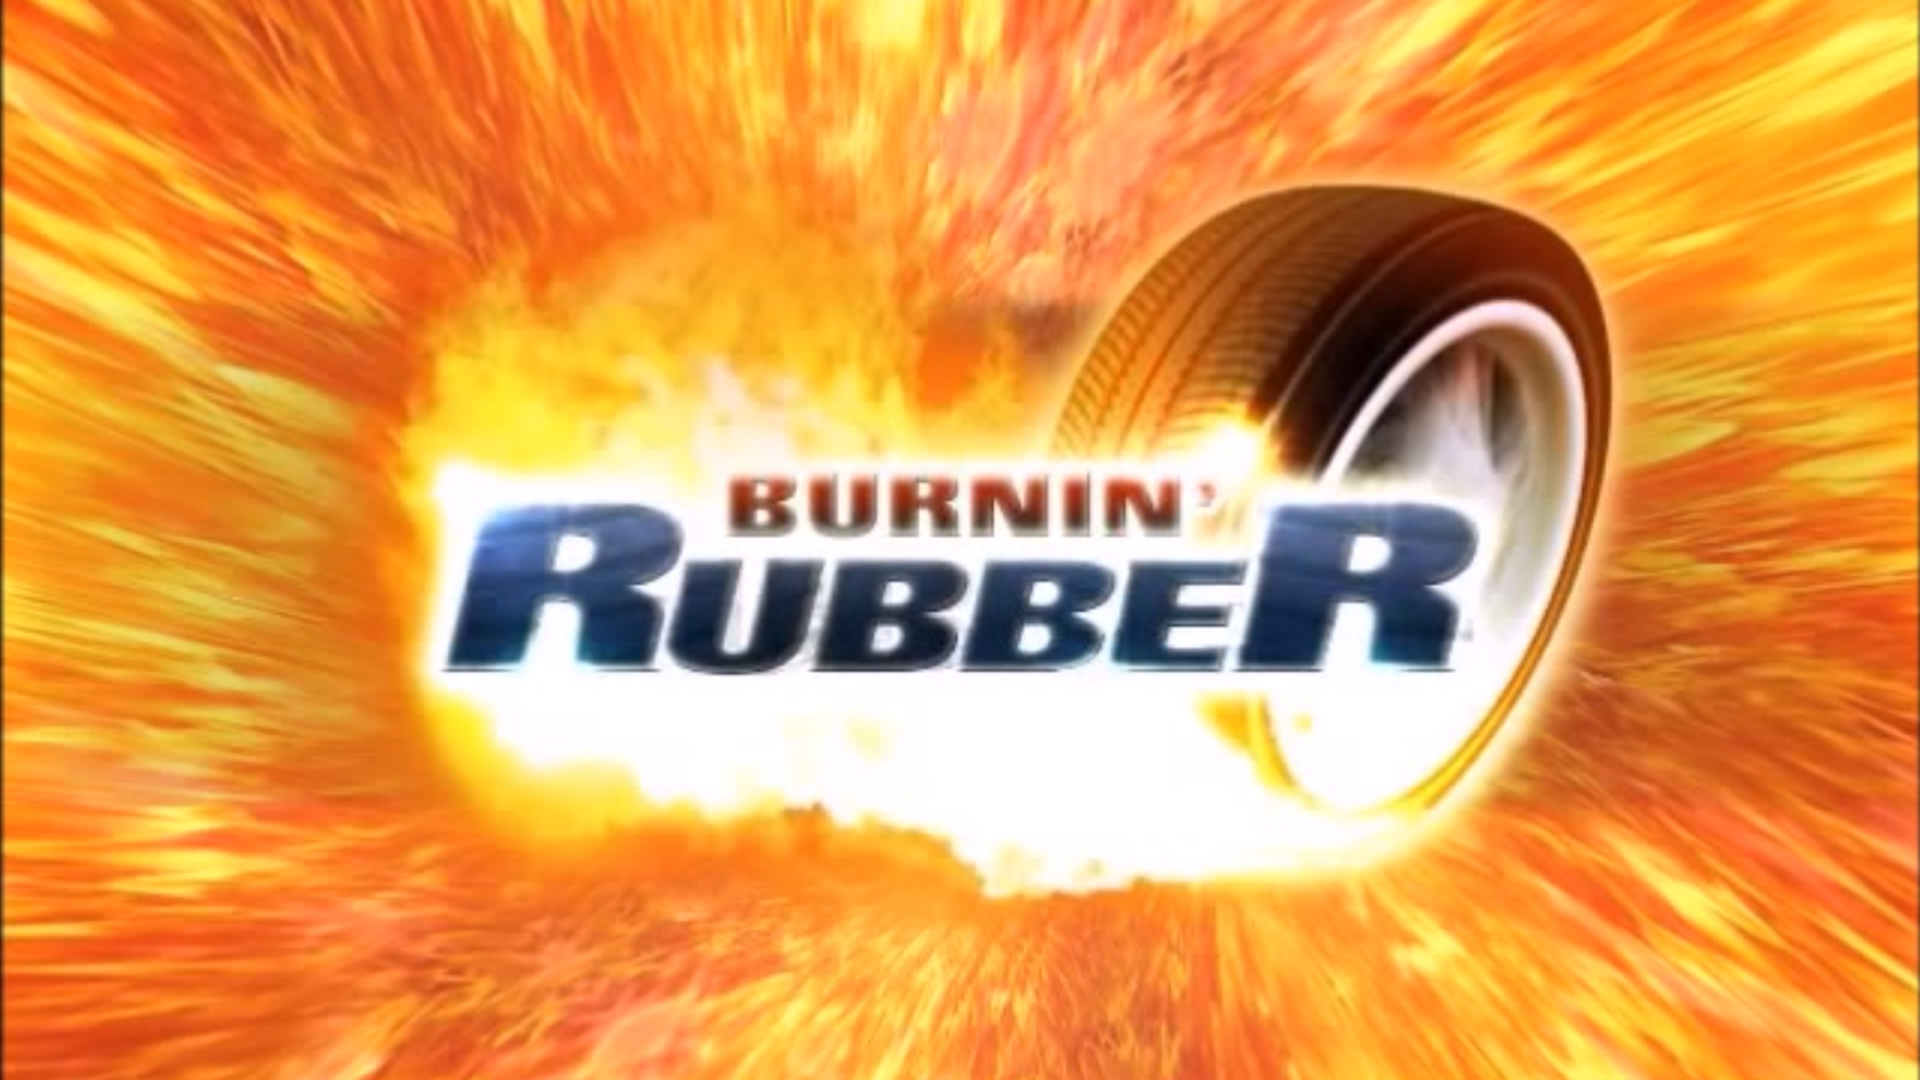 handleiding prachtig Nuchter Burnin' Rubber 1 3-Car Pack | BeamNG